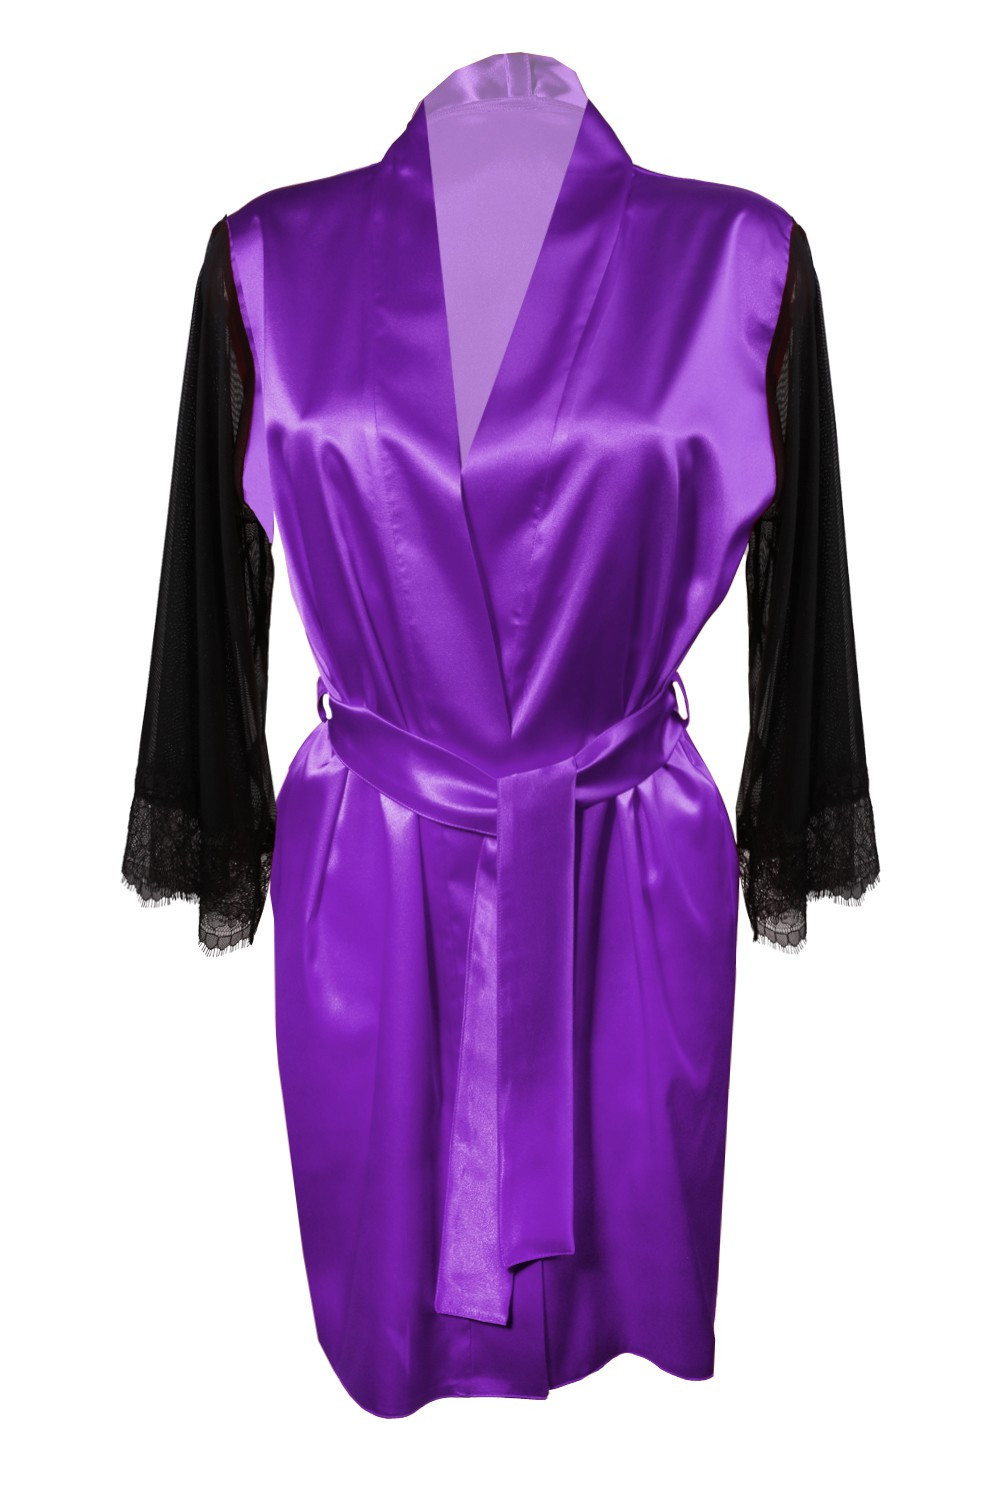 Housecoat model 18227303 Violet S Violet - DKaren